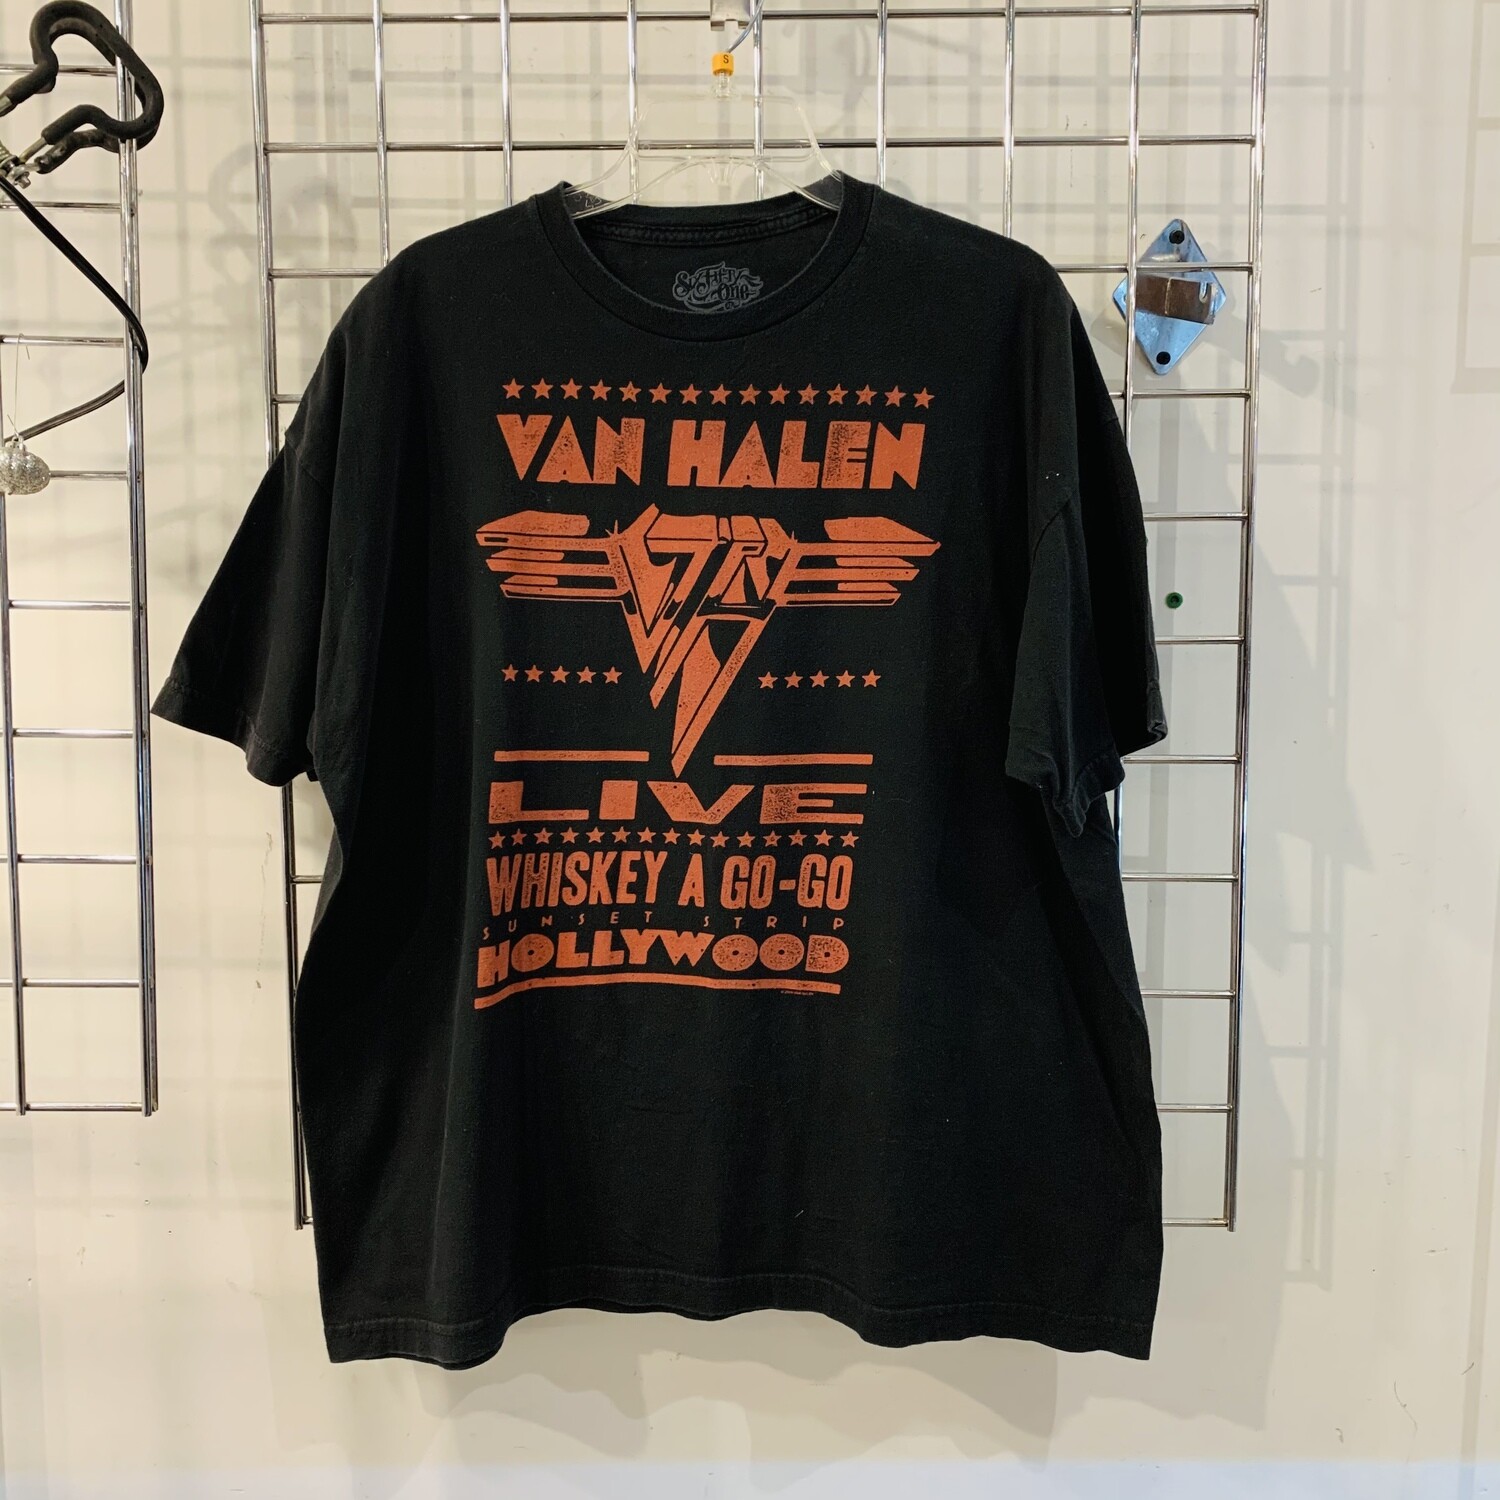 Size XL Van Halen Whiskey A Go-Go Sunset Strip Hollywood T-Shirt Black